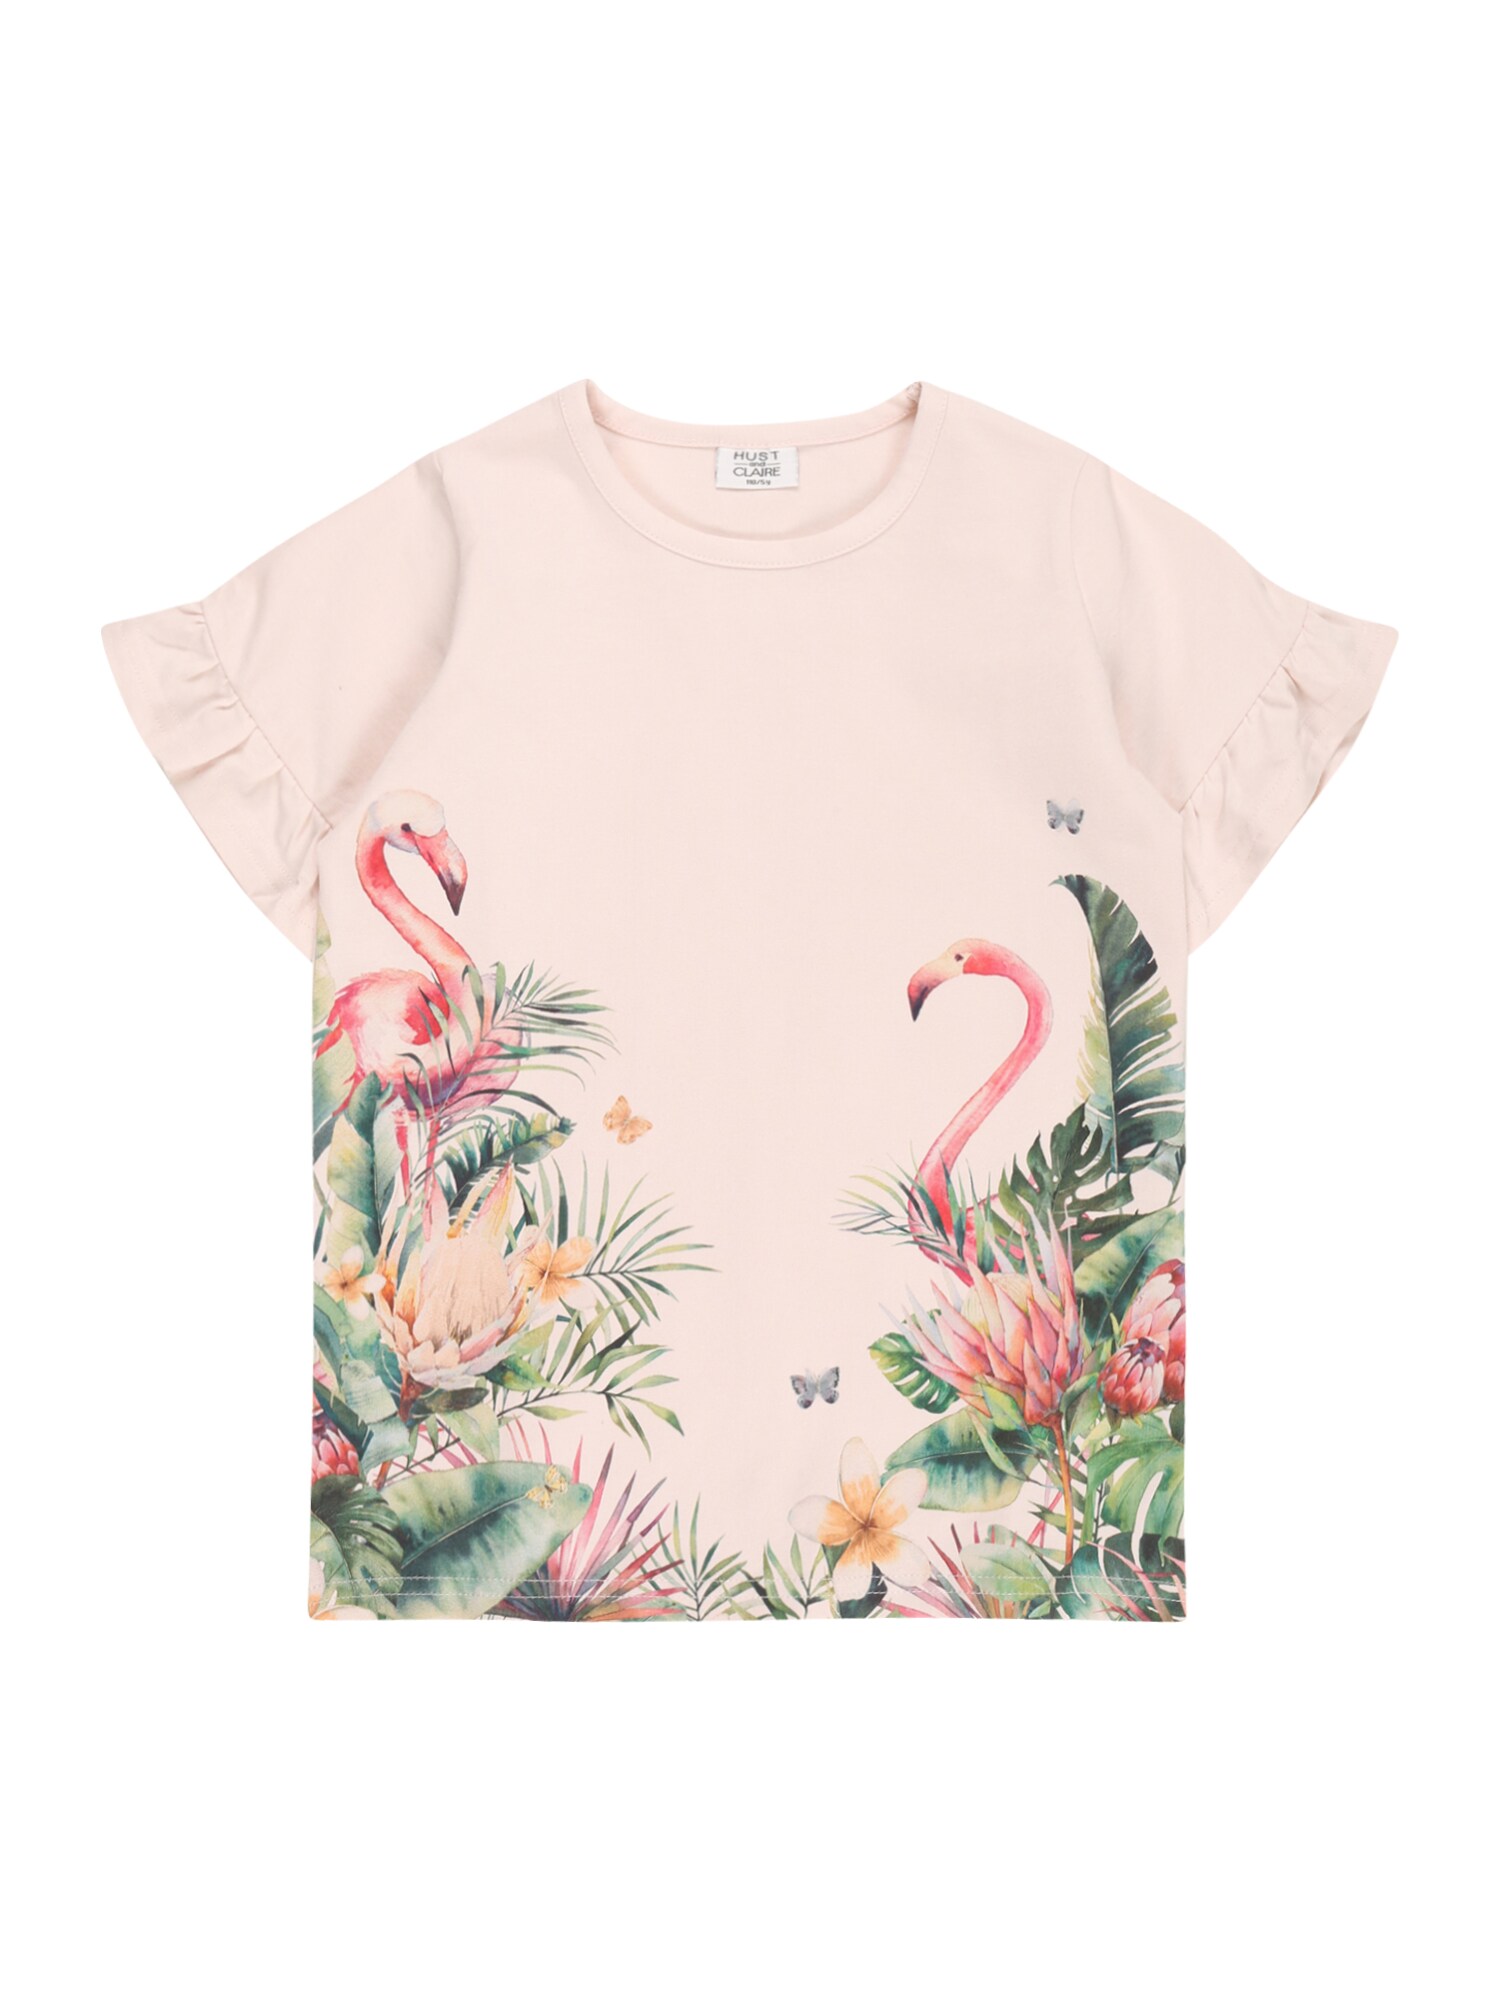 Hust & Claire Marškinėliai 'Alandria' žalia / mišrios spalvos / rožinė / rožių spalva